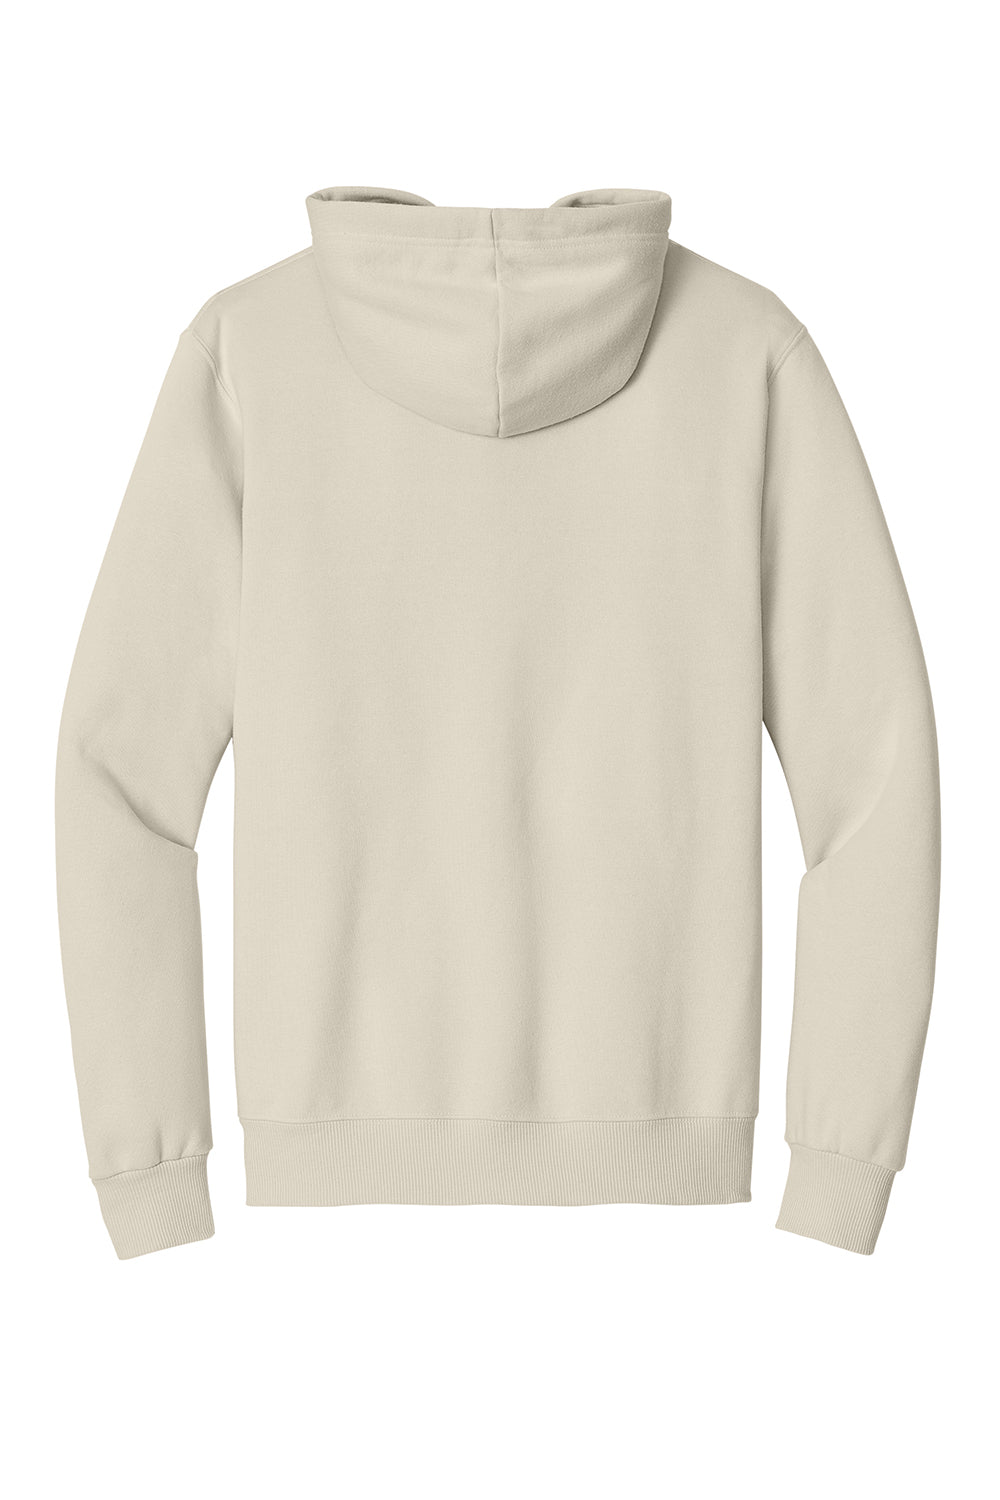 Jerzees 700M Mens Eco Premium Hooded Sweatshirt Hoodie Heather Sweet Cream Flat Back